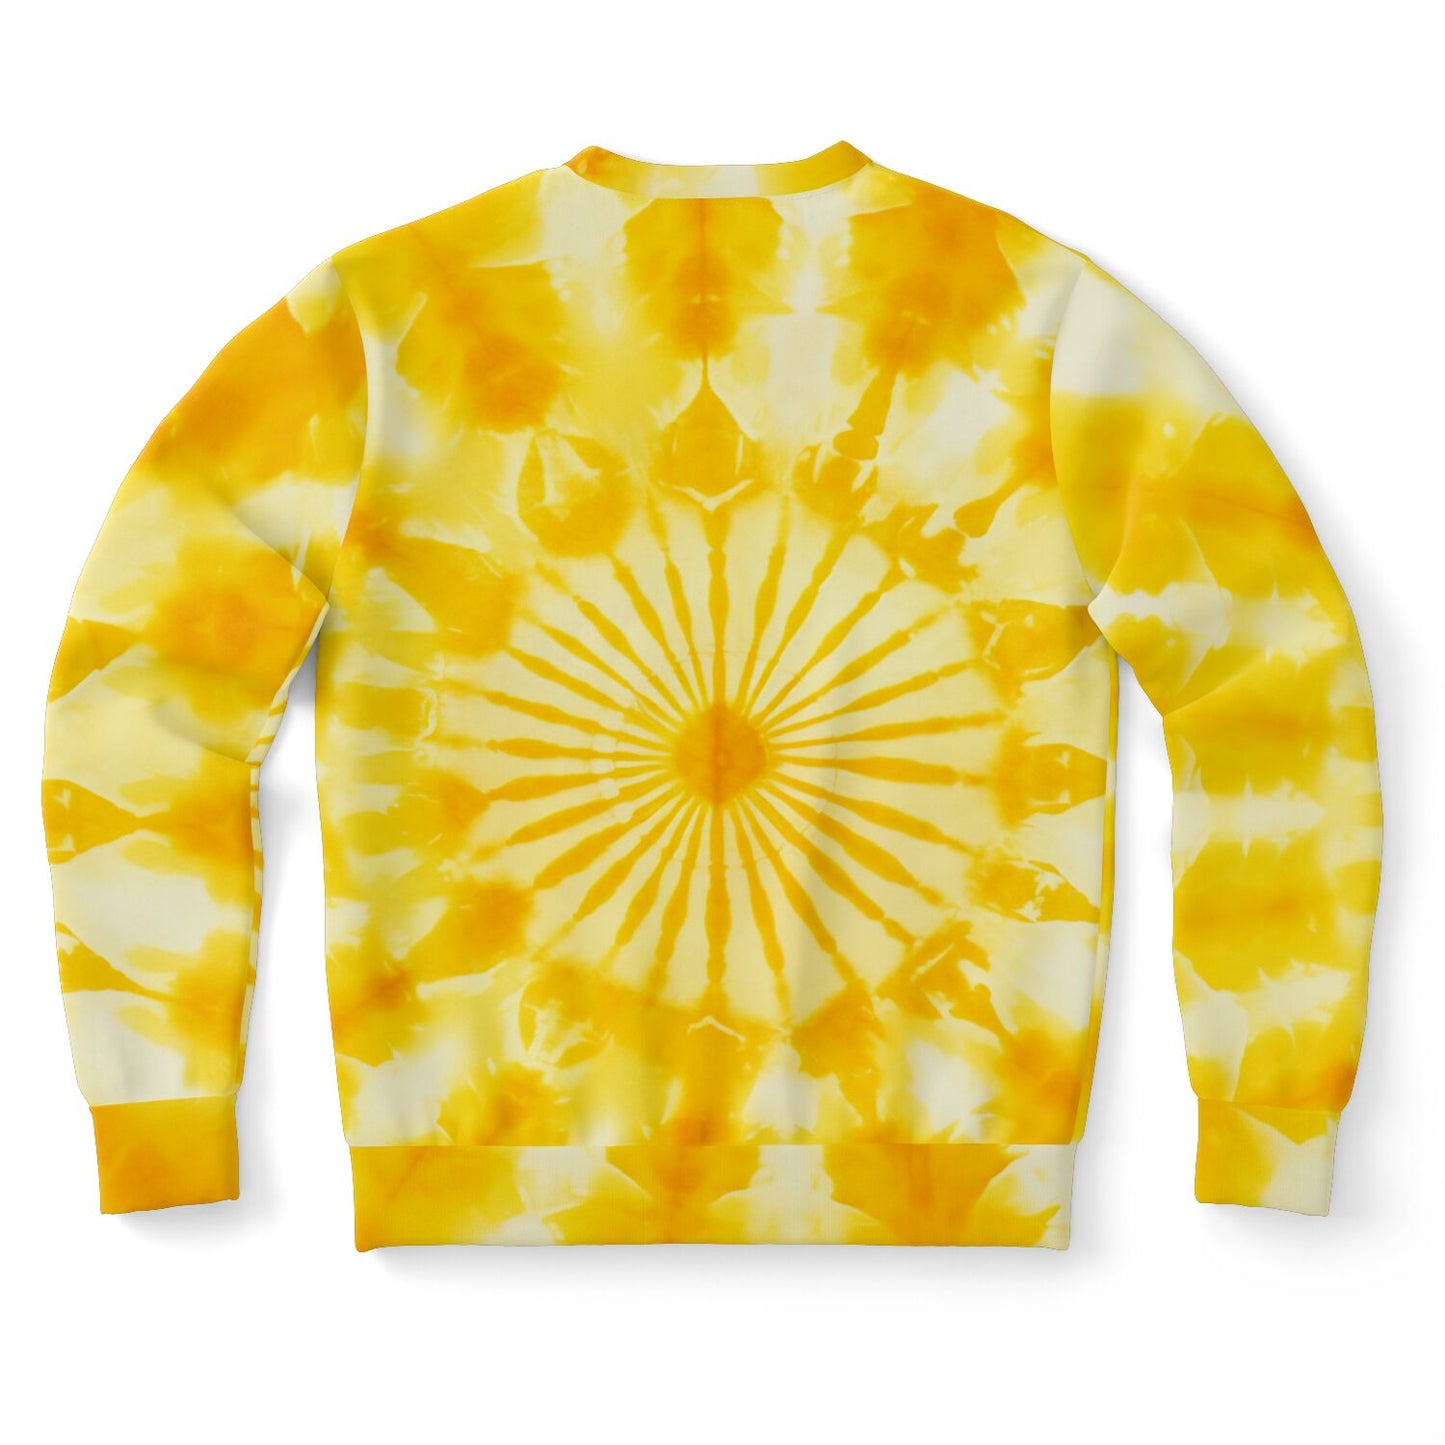 Yellow Tie Dye Sweatshirt, Graphic Crewneck Fleece Cotton Sweater Jumper Pullover Men Women Adult Aesthetic Designer Top